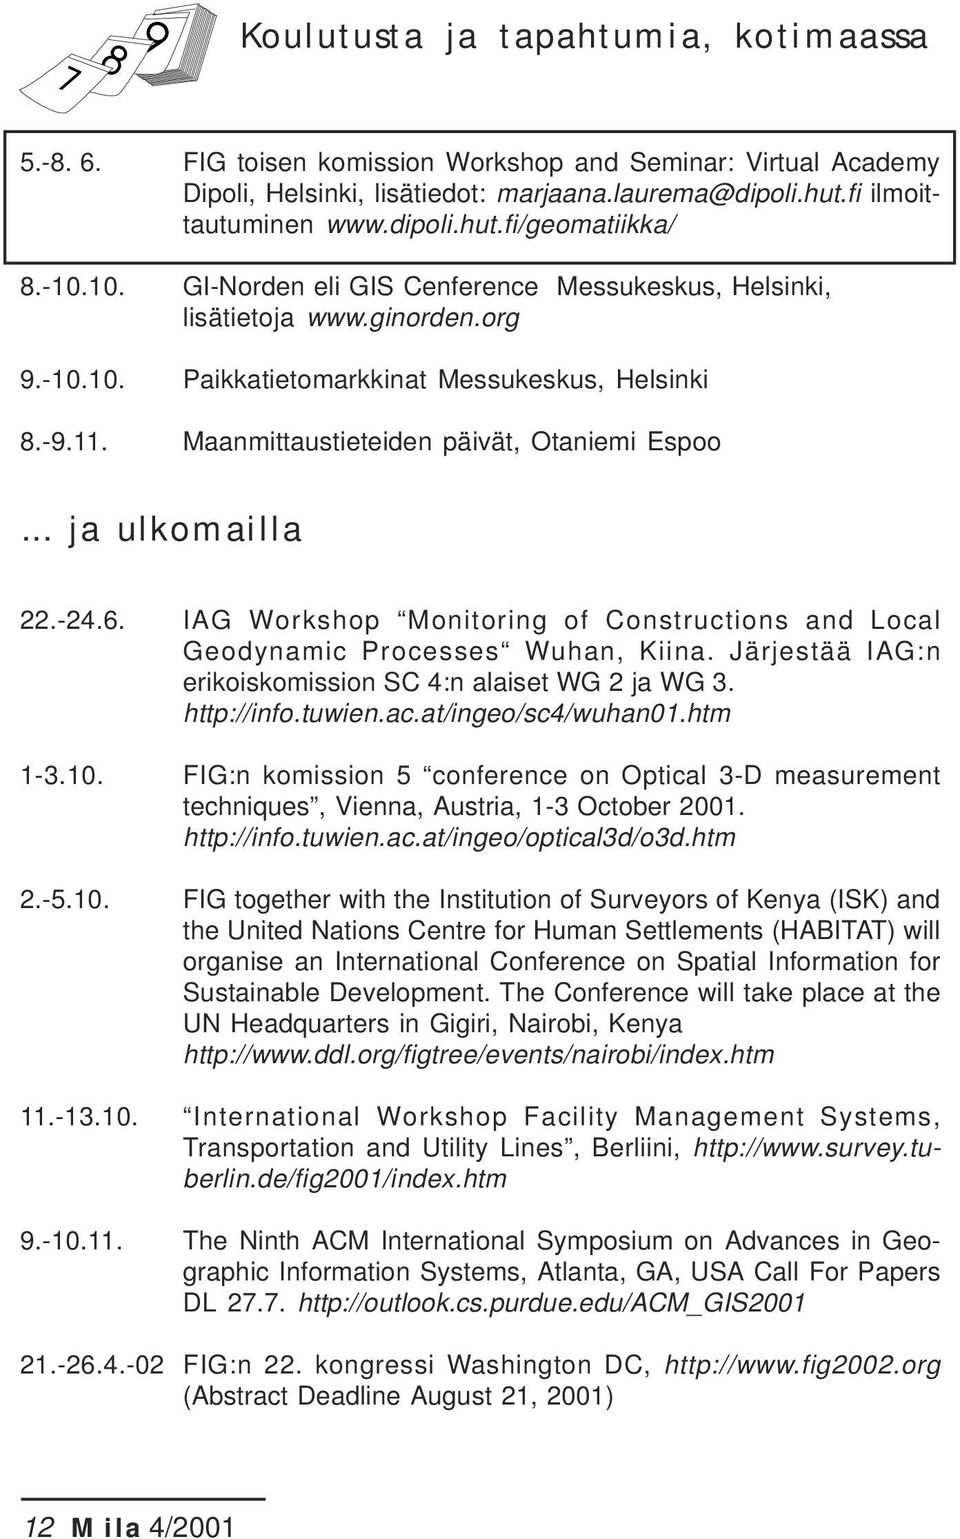 .. ja ulkomailla 22.-24.6. IAG Workshop Monitoring of Constructions and Local Geodynamic Processes Wuhan, Kiina. Järjestää IAG:n erikoiskomission SC 4:n alaiset WG 2 ja WG 3. http://info.tuwien.ac.